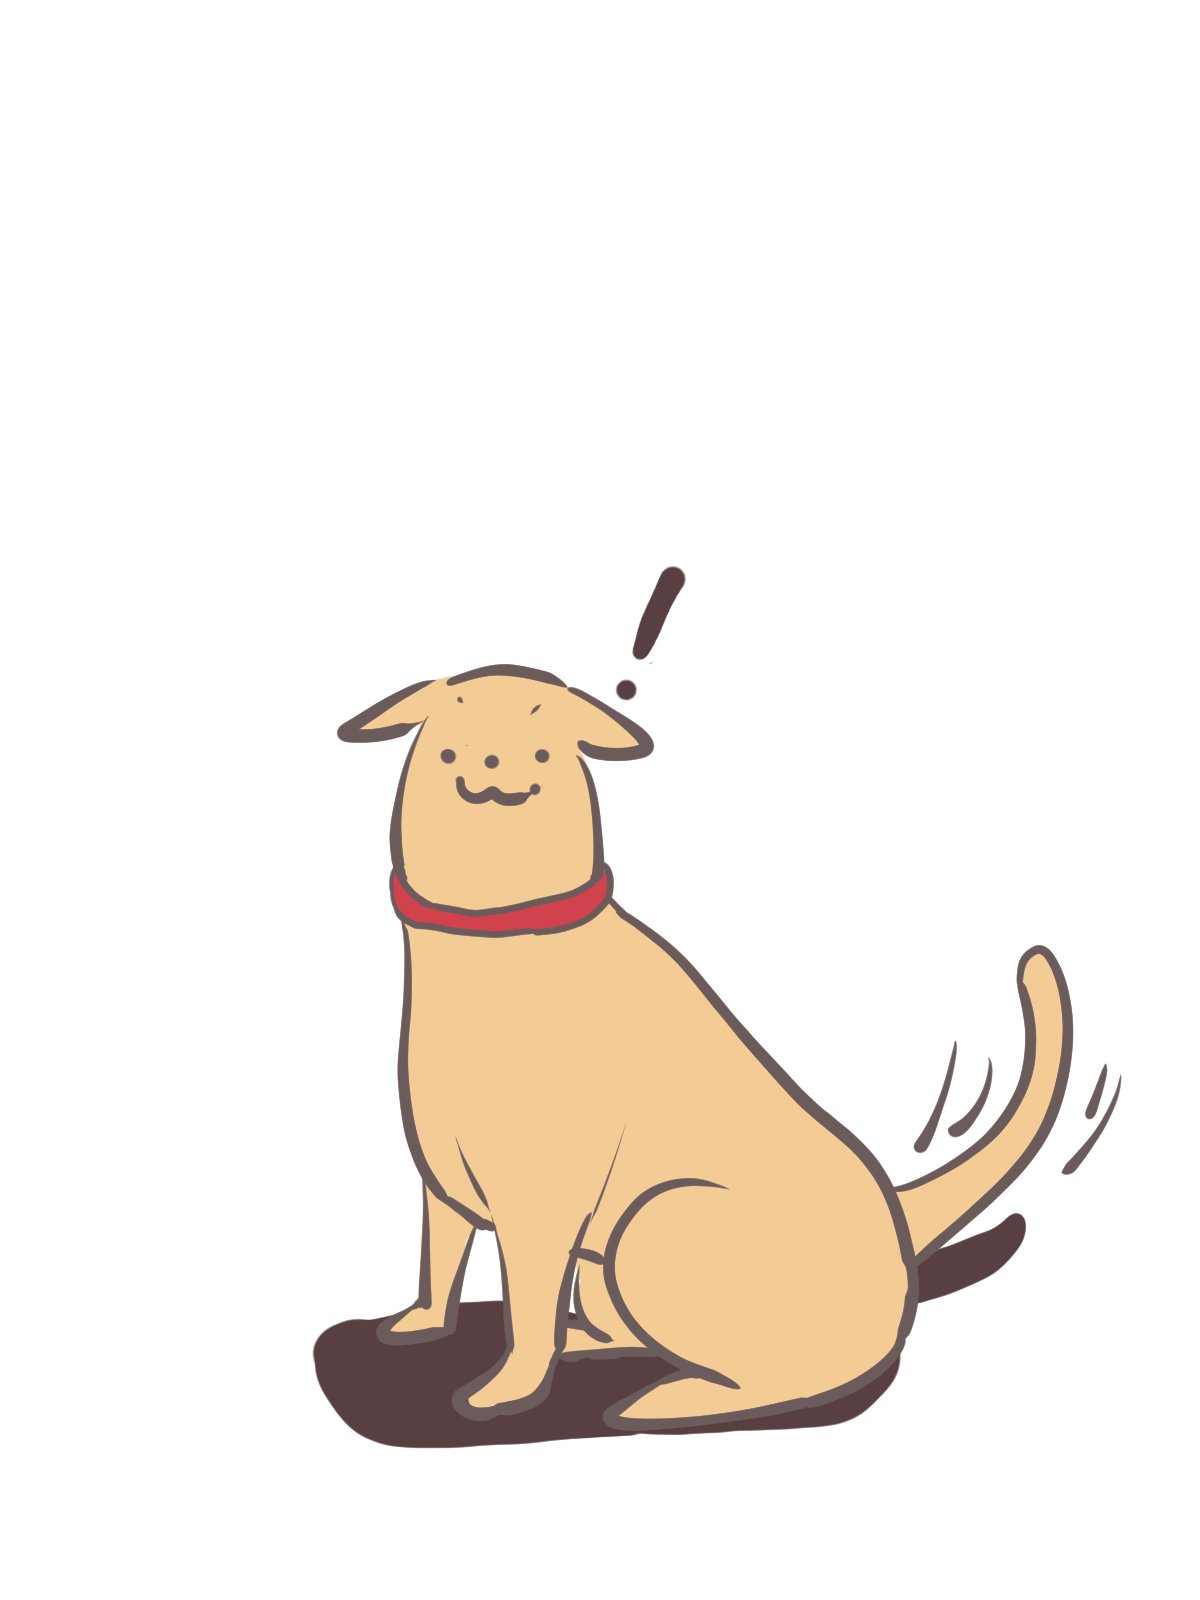 Kou Inoue 落書き犬 飼い主を発見する犬 夢で走る犬 落書き 犬好きさんと繋がりたい イラスト T Co Nwyug87ifq Twitter